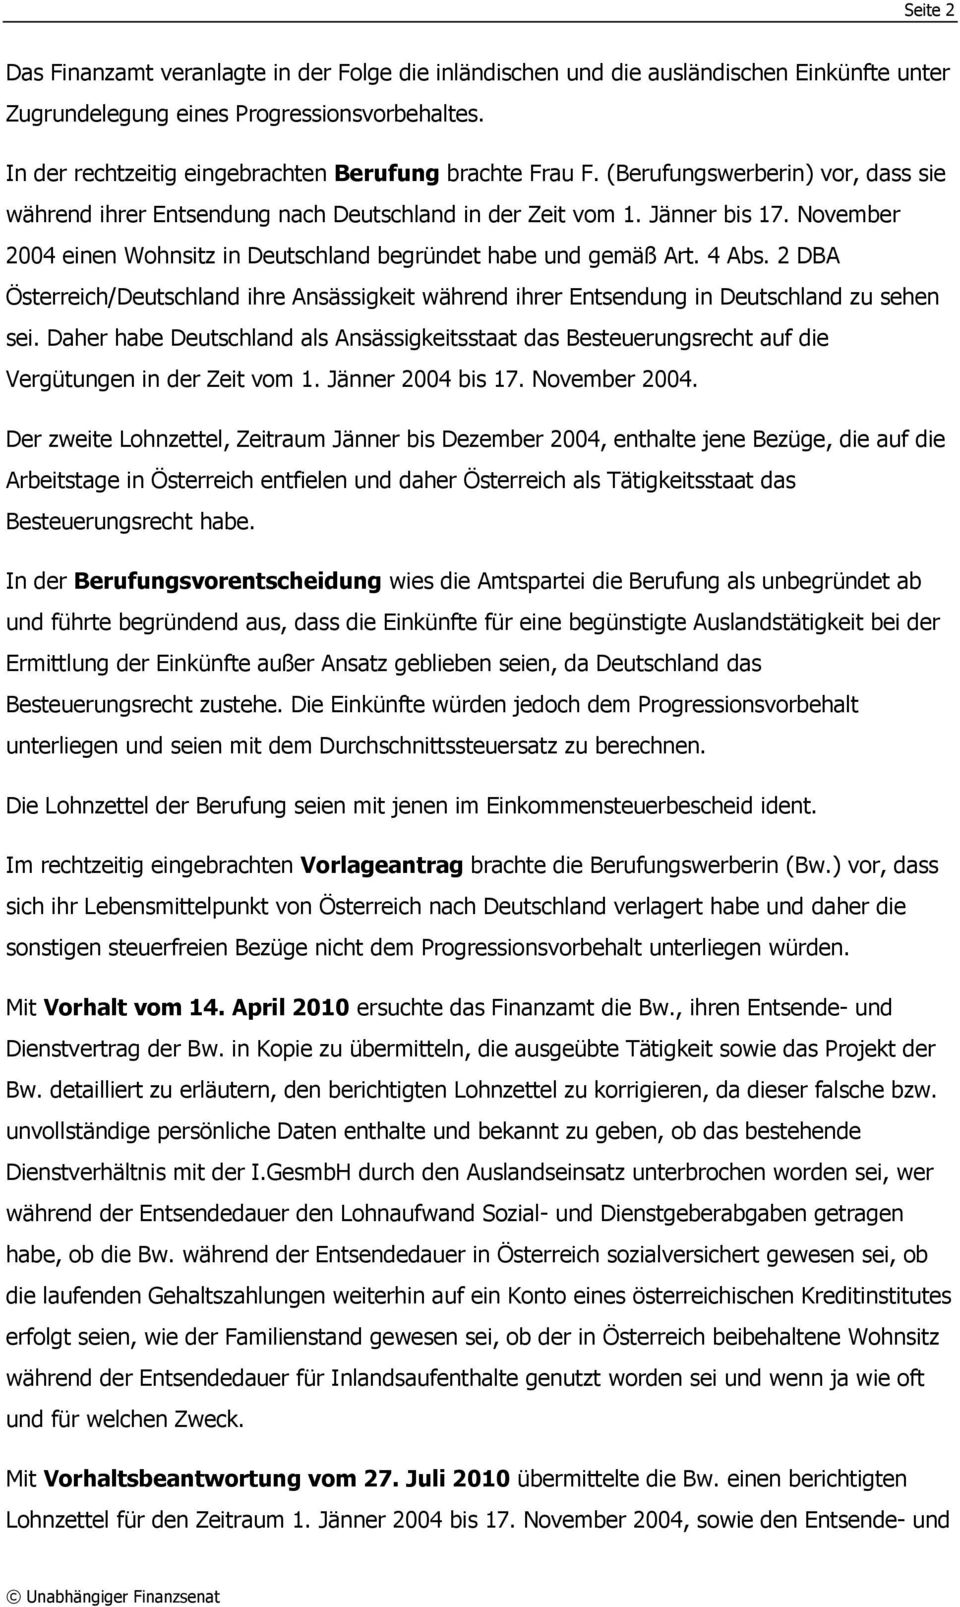 November 2004 einen Wohnsitz in Deutschland begründet habe und gemäß Art. 4 Abs. 2 DBA Österreich/Deutschland ihre Ansässigkeit während ihrer Entsendung in Deutschland zu sehen sei.